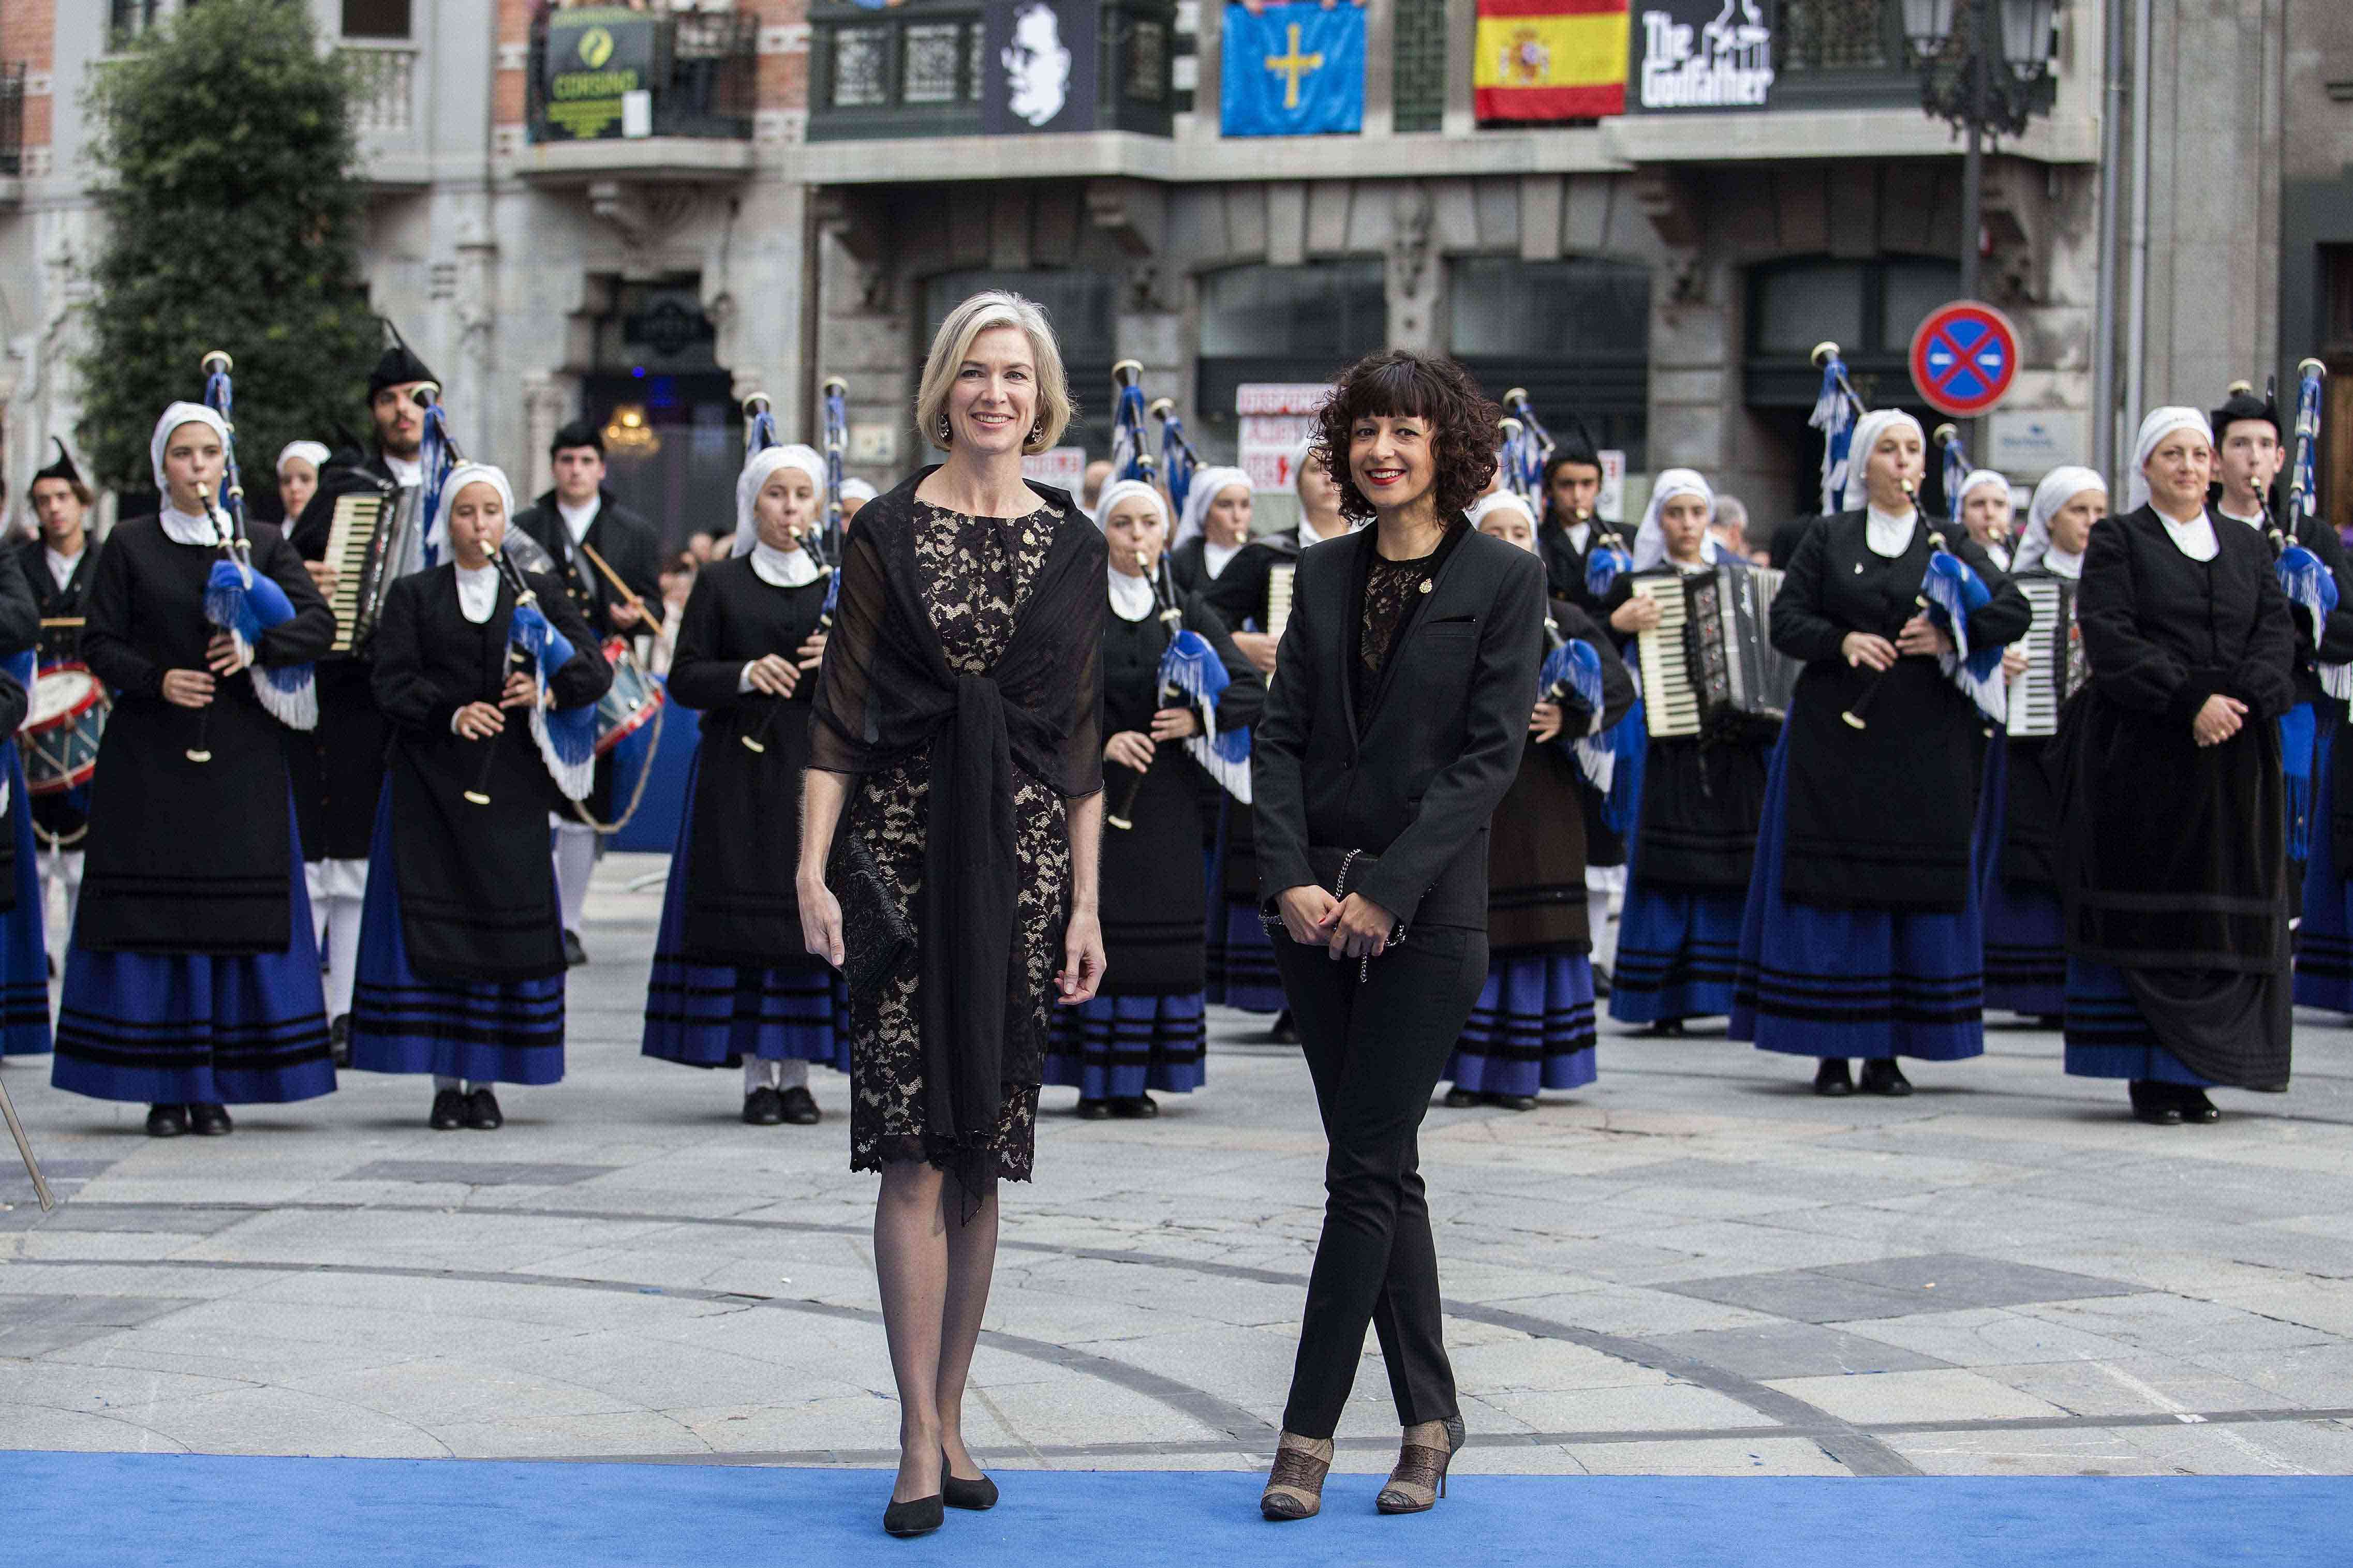 2015 Princess of Asturias Awards